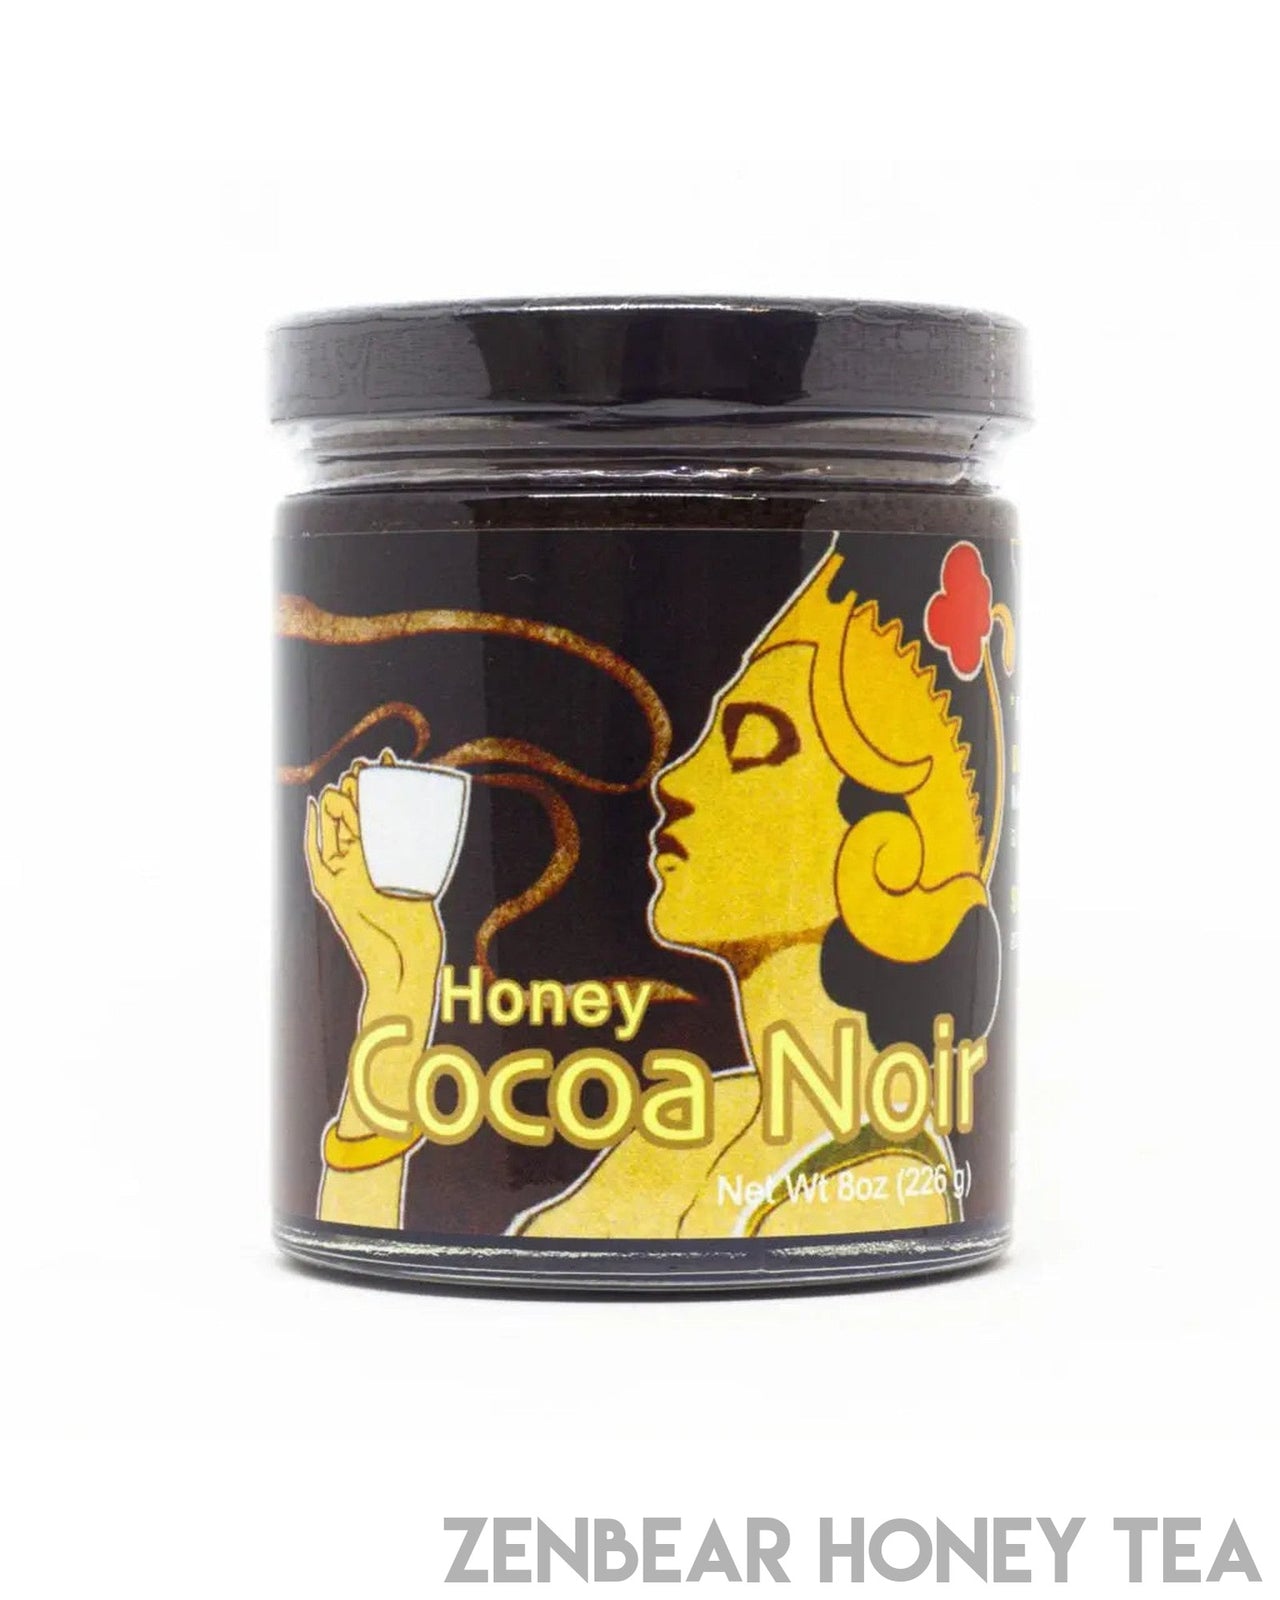 Cocoa Noir - Zenbear Honey Tea